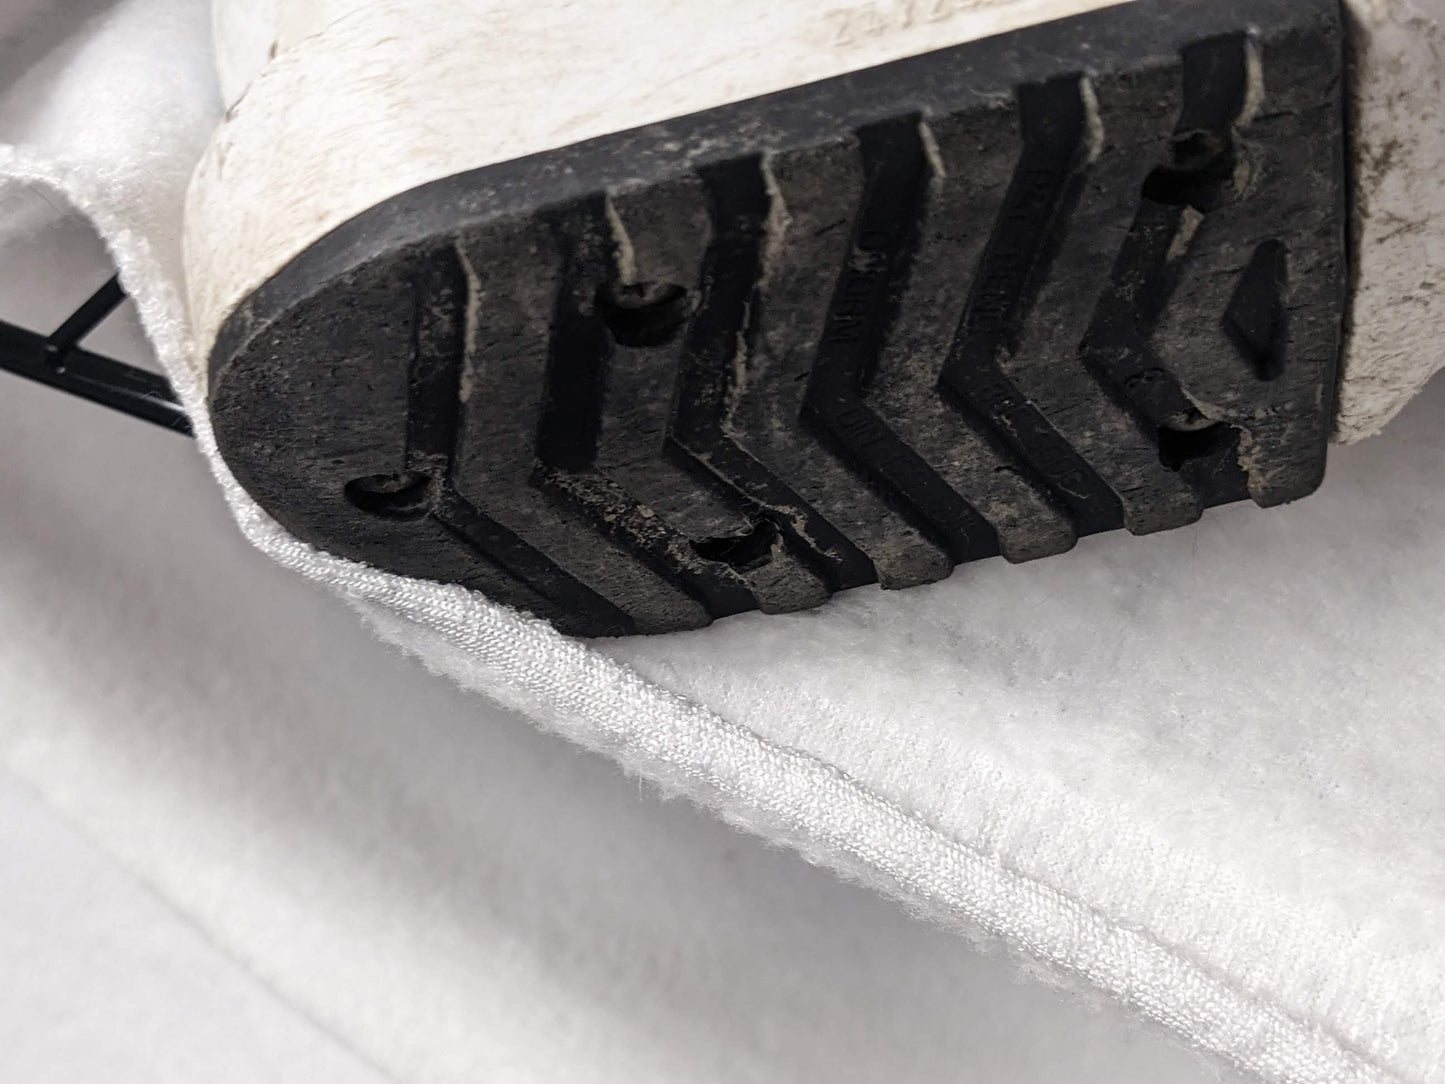 Salomon SPK Ski Boots Size 24.5 Color White Condition Used